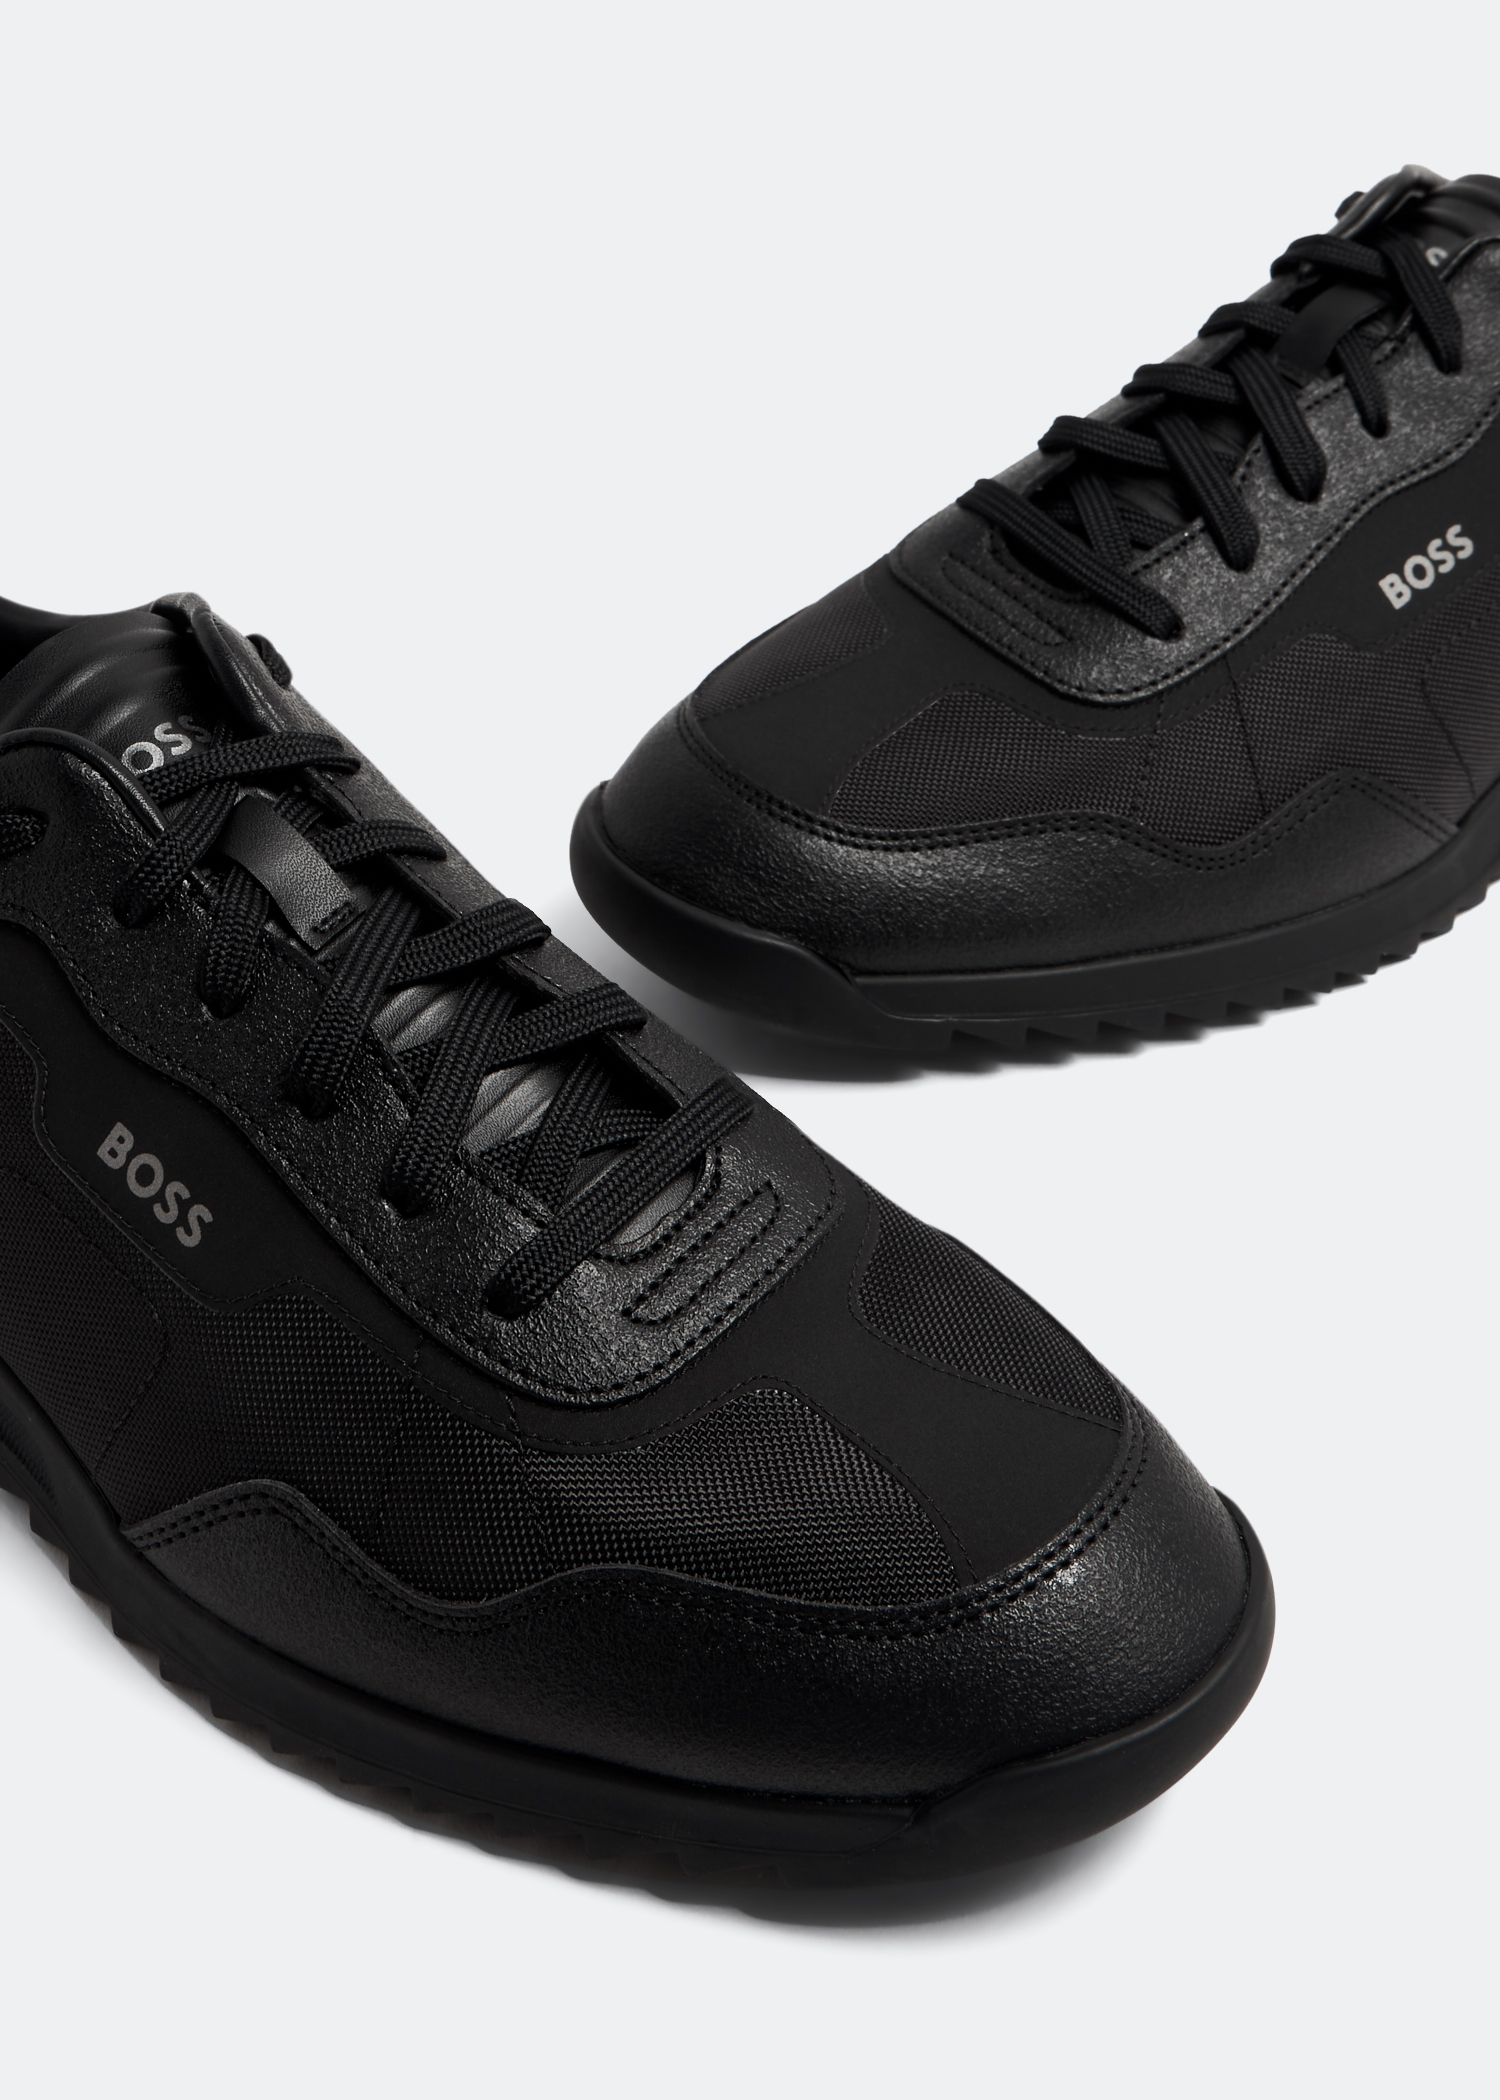 BOSS Men's Saturn Low-Profile Leather Sneaker - Macy's